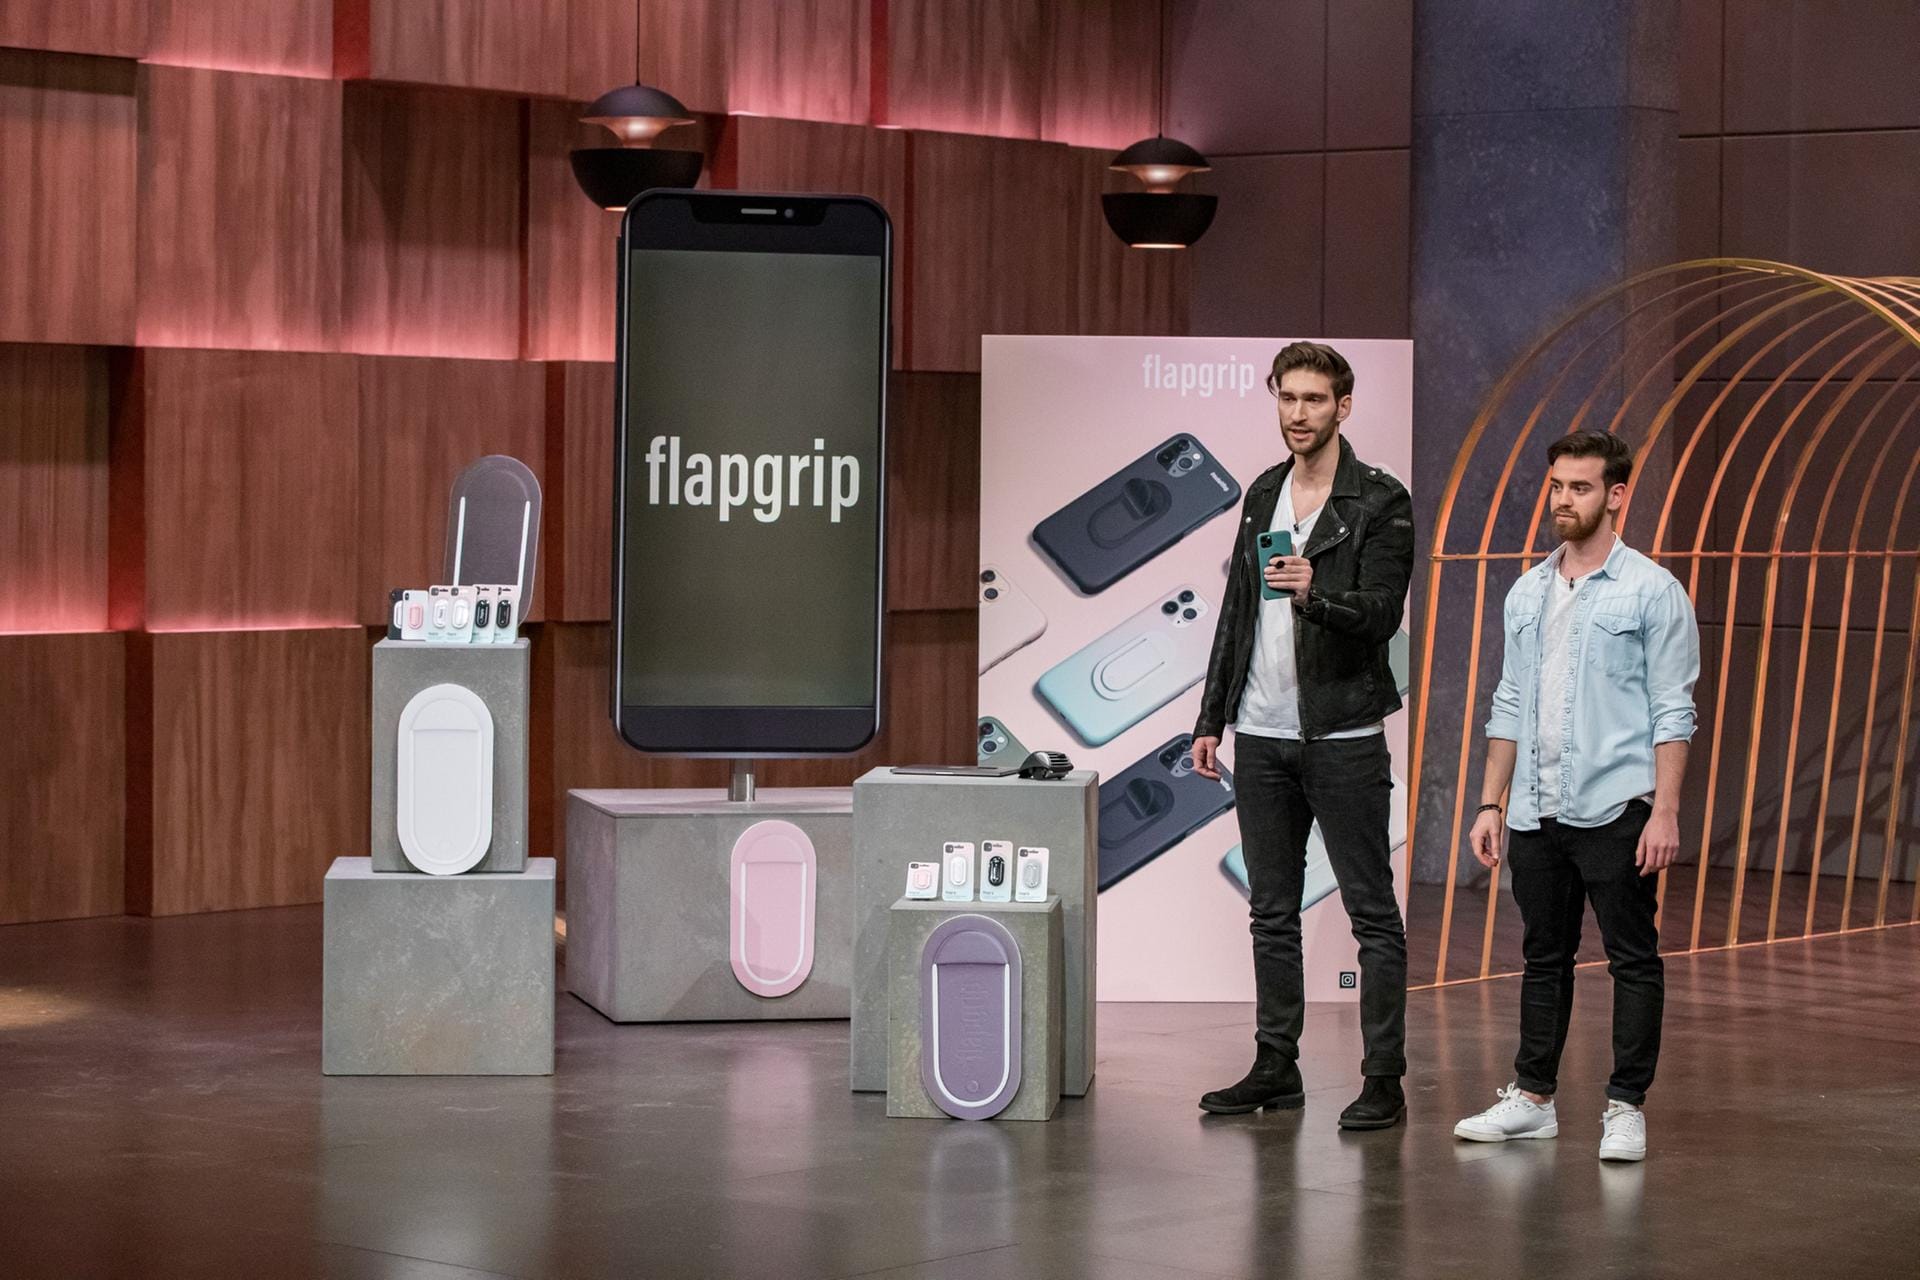 In der ersten Folge der neuen Staffel von "Die Höhle der Löwen" haben zwei Gründer eine neuartige Smartphone-Halterung vorgestellt. Was taugt Flapgrip?